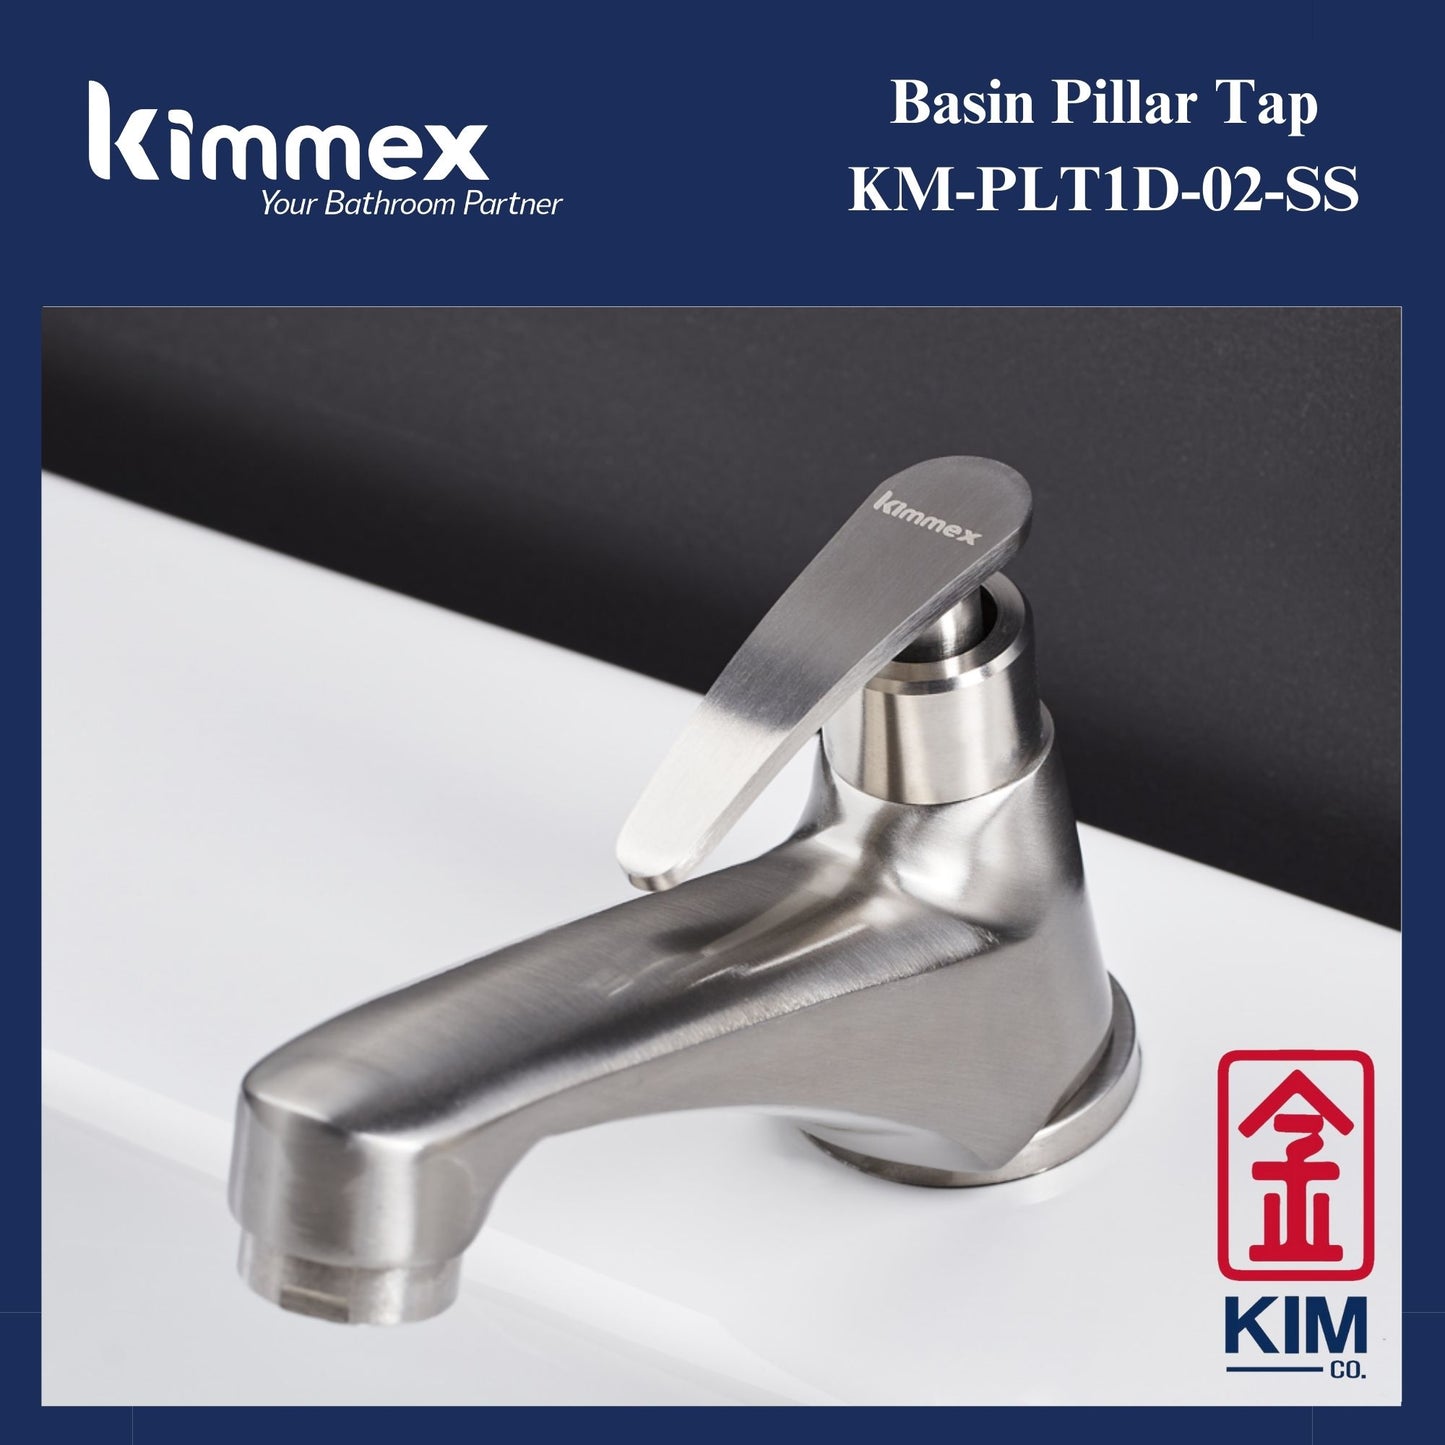 kimmex Basin Pillar Tap (KM-PLT1D-02-SS)